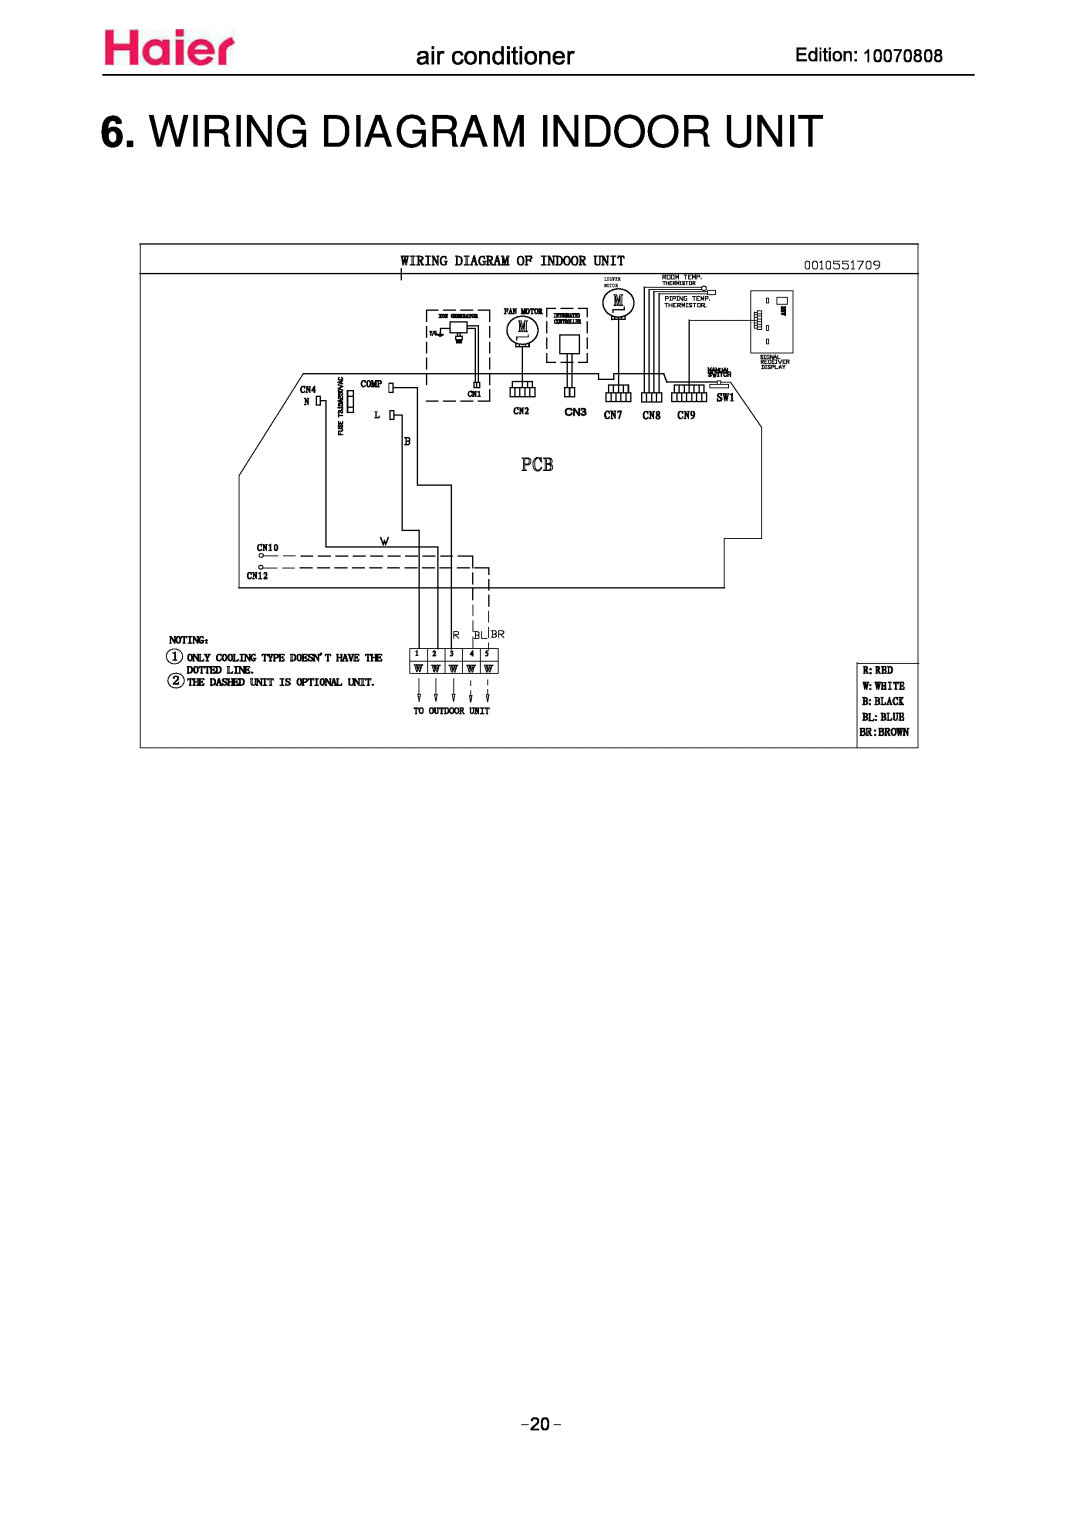 Haier HSU18VH7 Wiring Diagram Indoor Unit, Wiring Diagram Of Indoor Unit, CN3 CN7 CN8, Noting：, Br Brown, CN10 CN12, Comp 